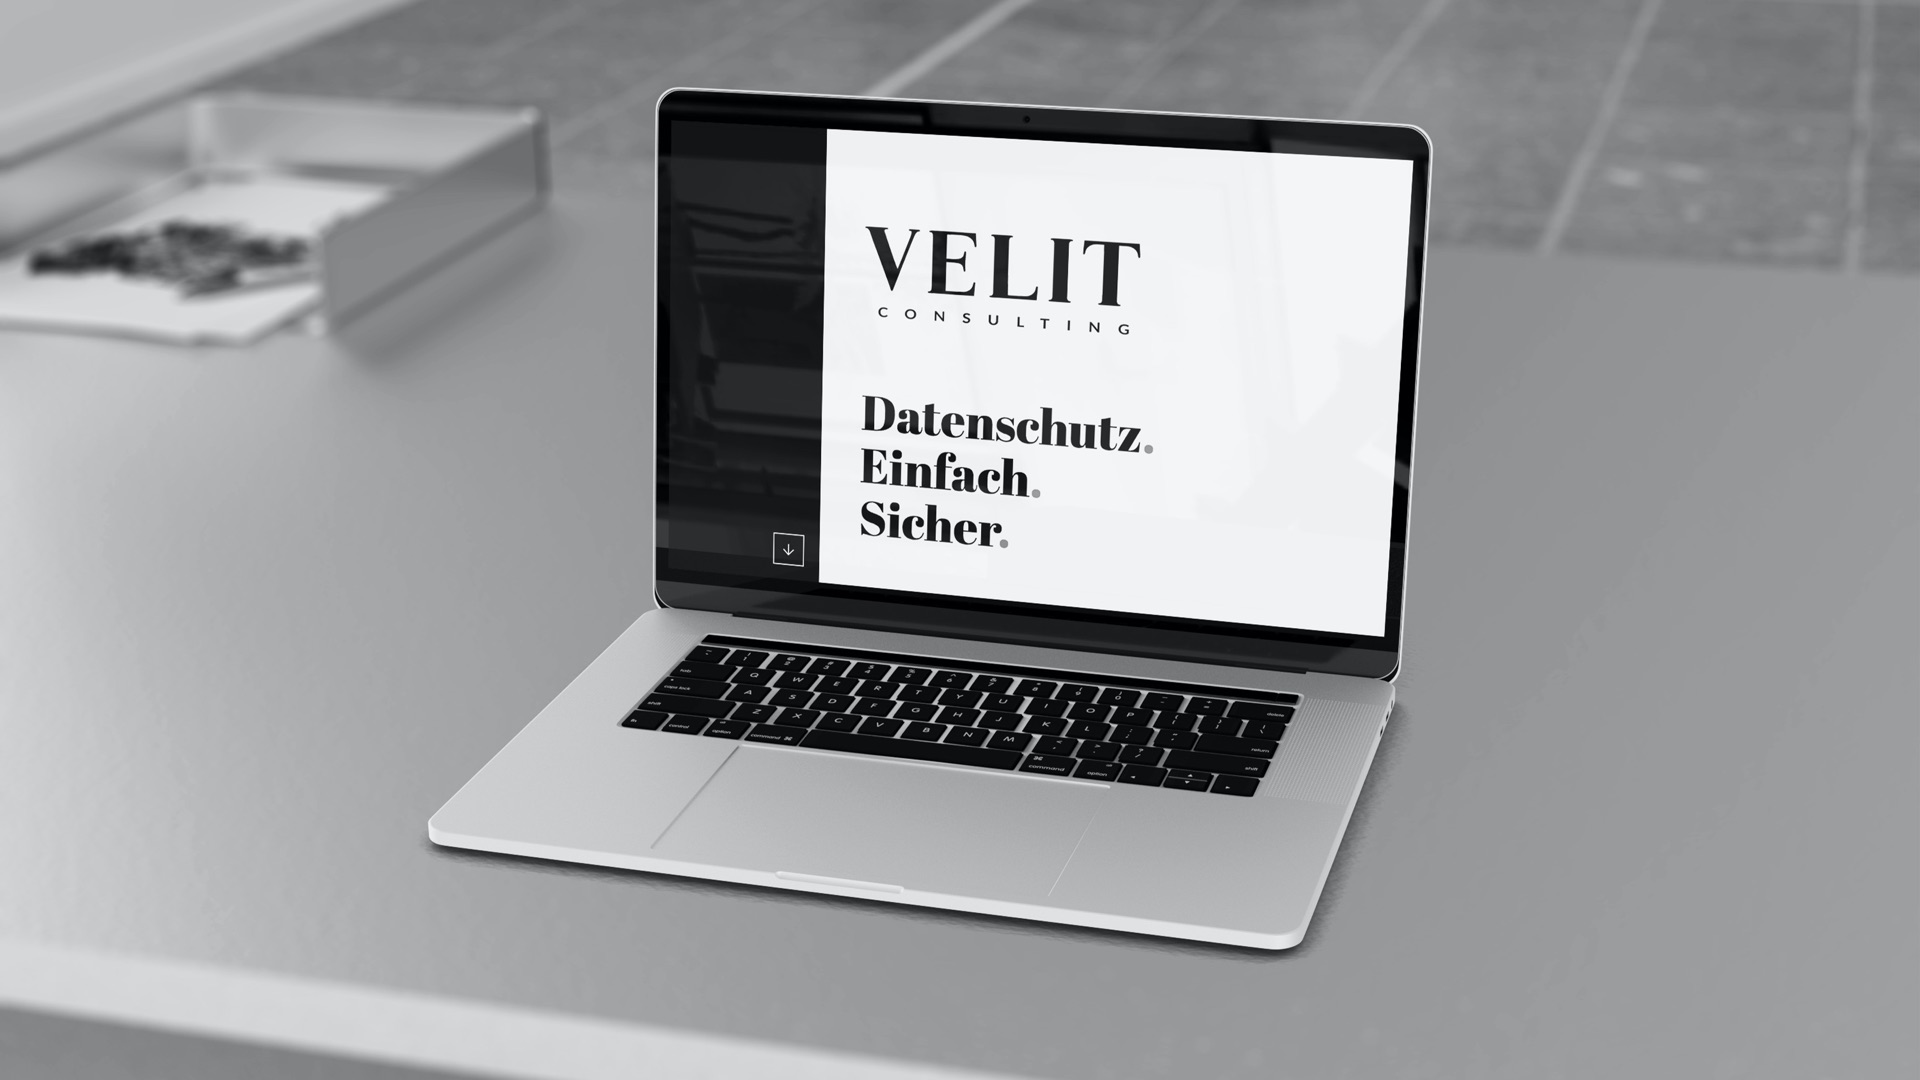 Neuer Look für die VELIT Consulting!